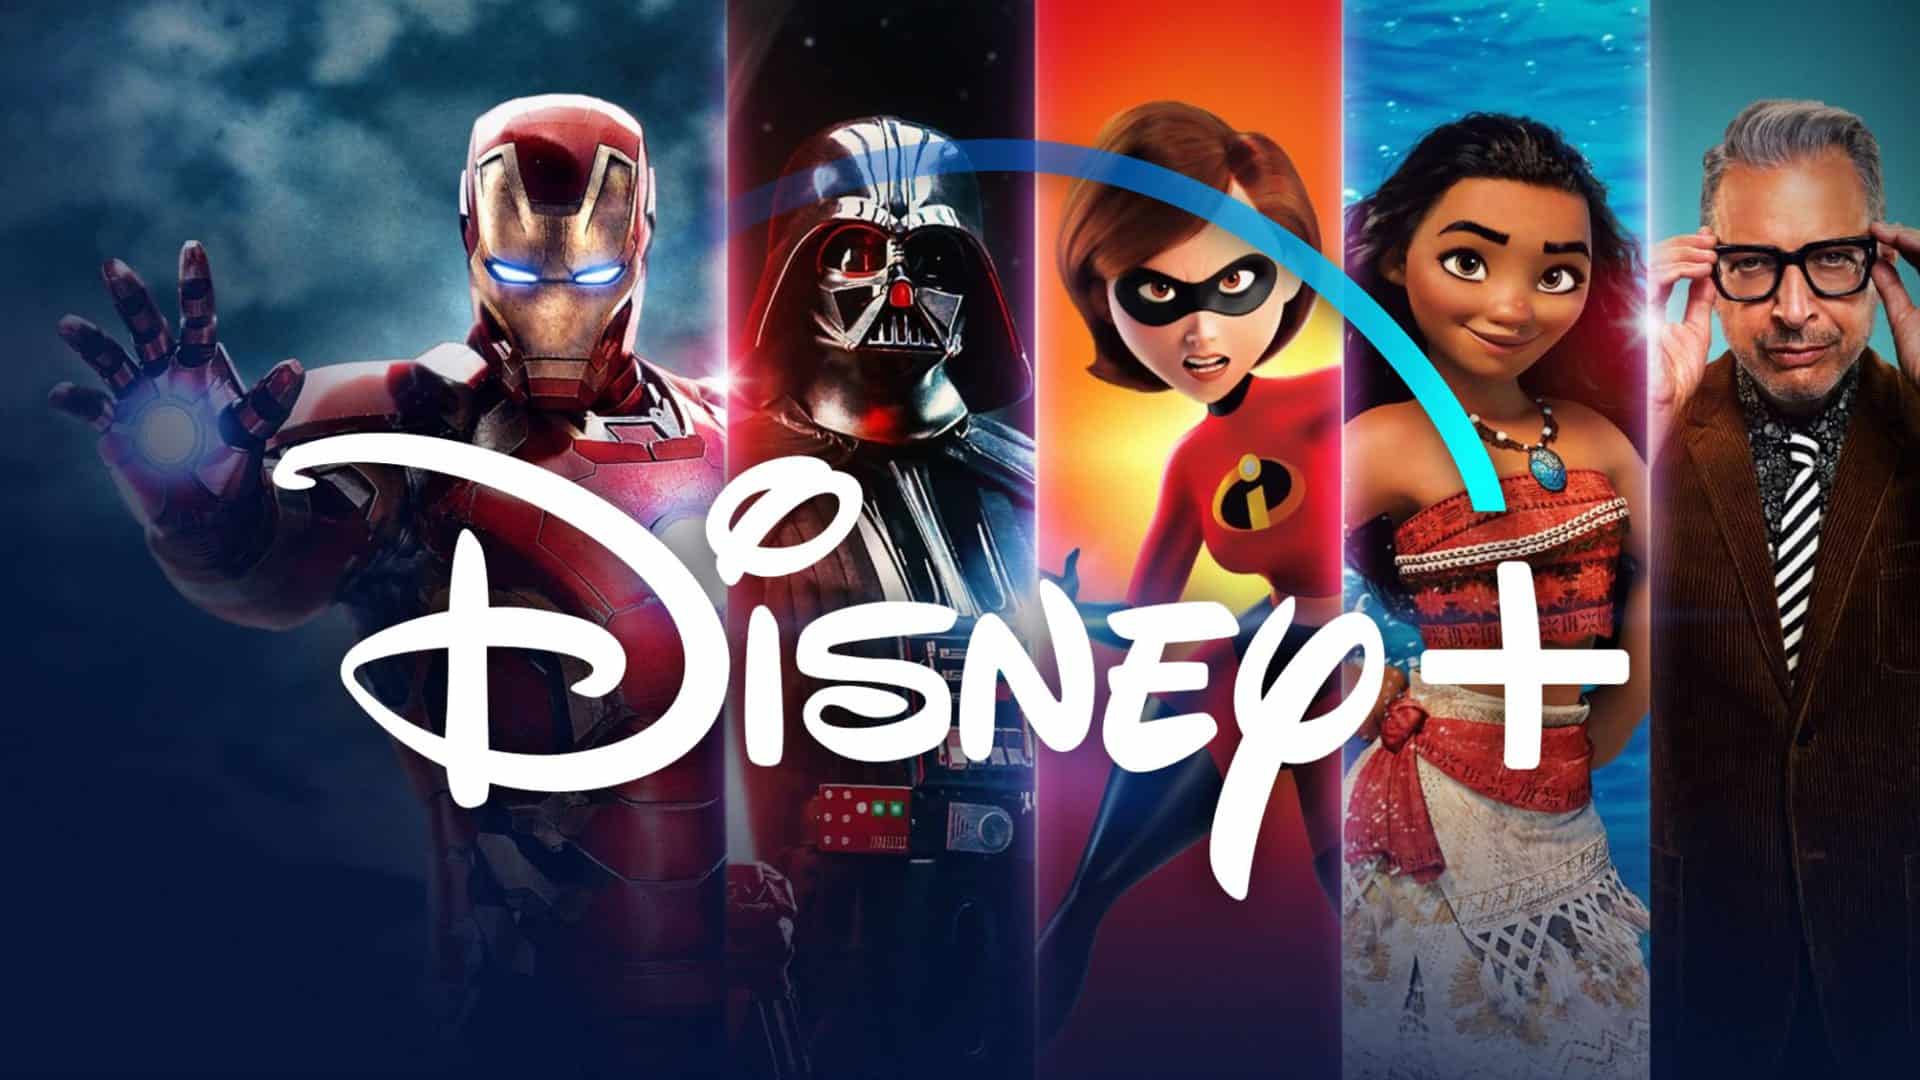 Disney+: tutte le info sull’abbonamento e sul catalogo